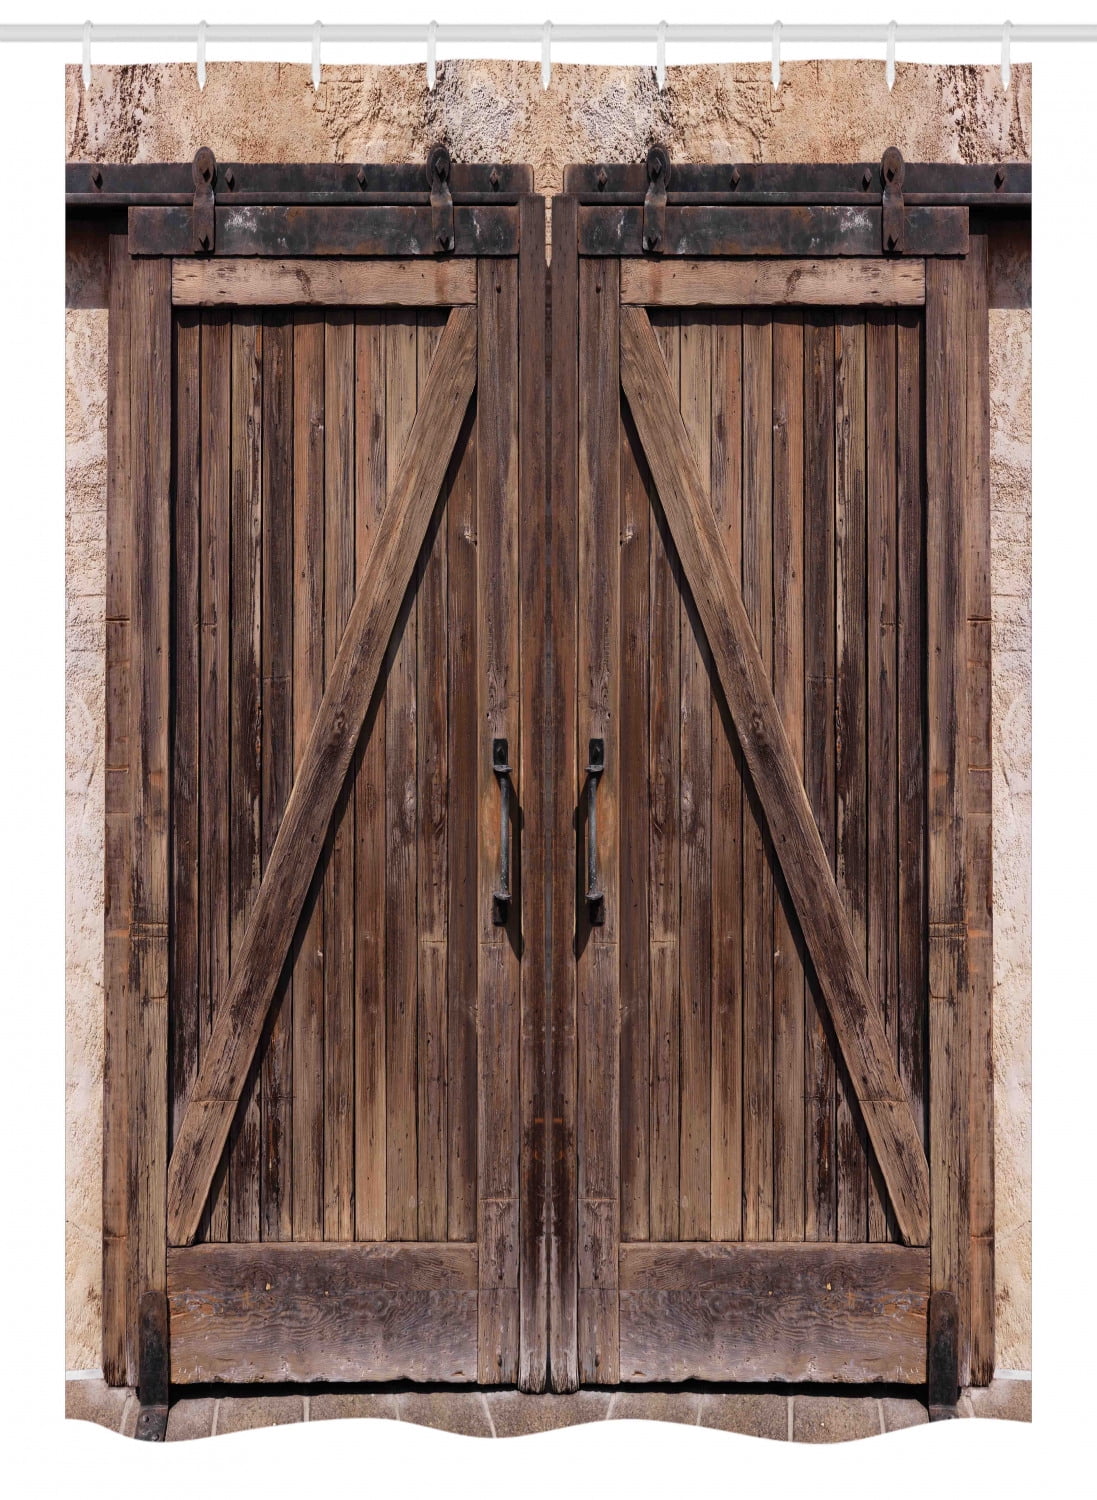 Rustic Wooden Barn Door Shower Curtain Bedroom Decor Waterproof Fabric & 12hooks 